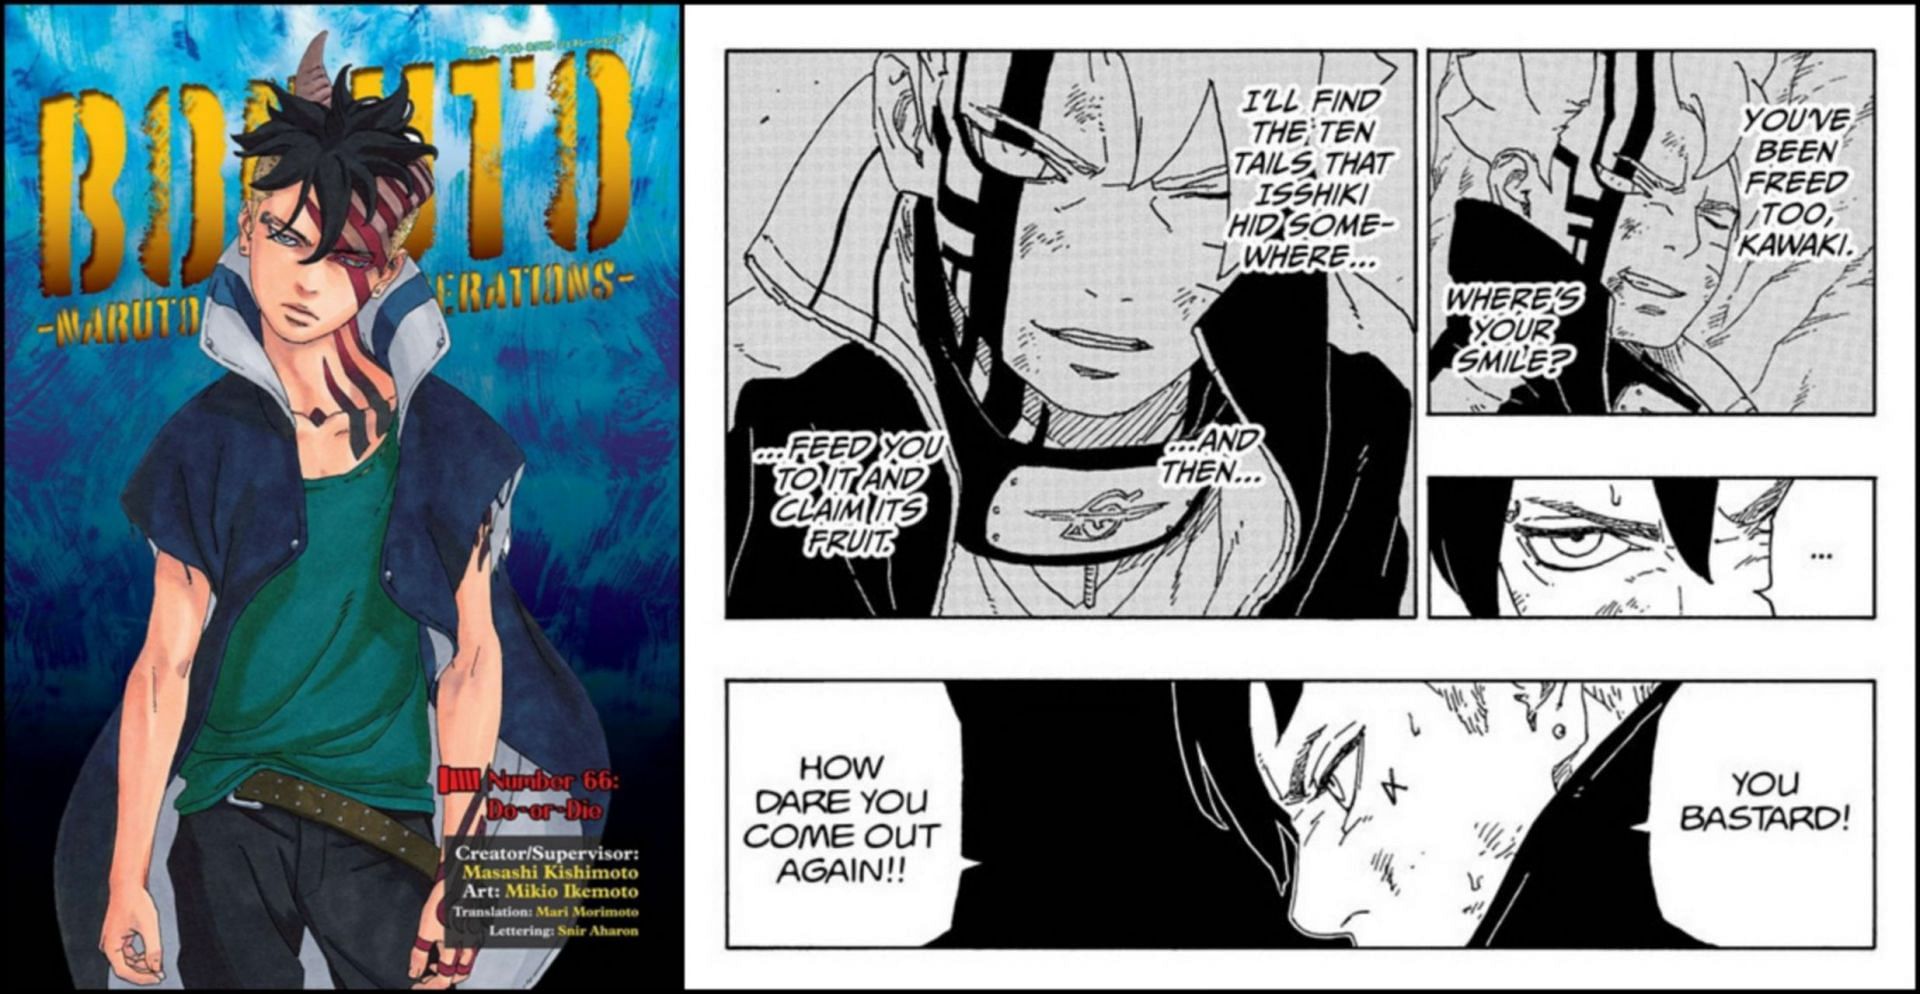 Boruto chapter 66 cover and manga panel (Image via Shueisha)